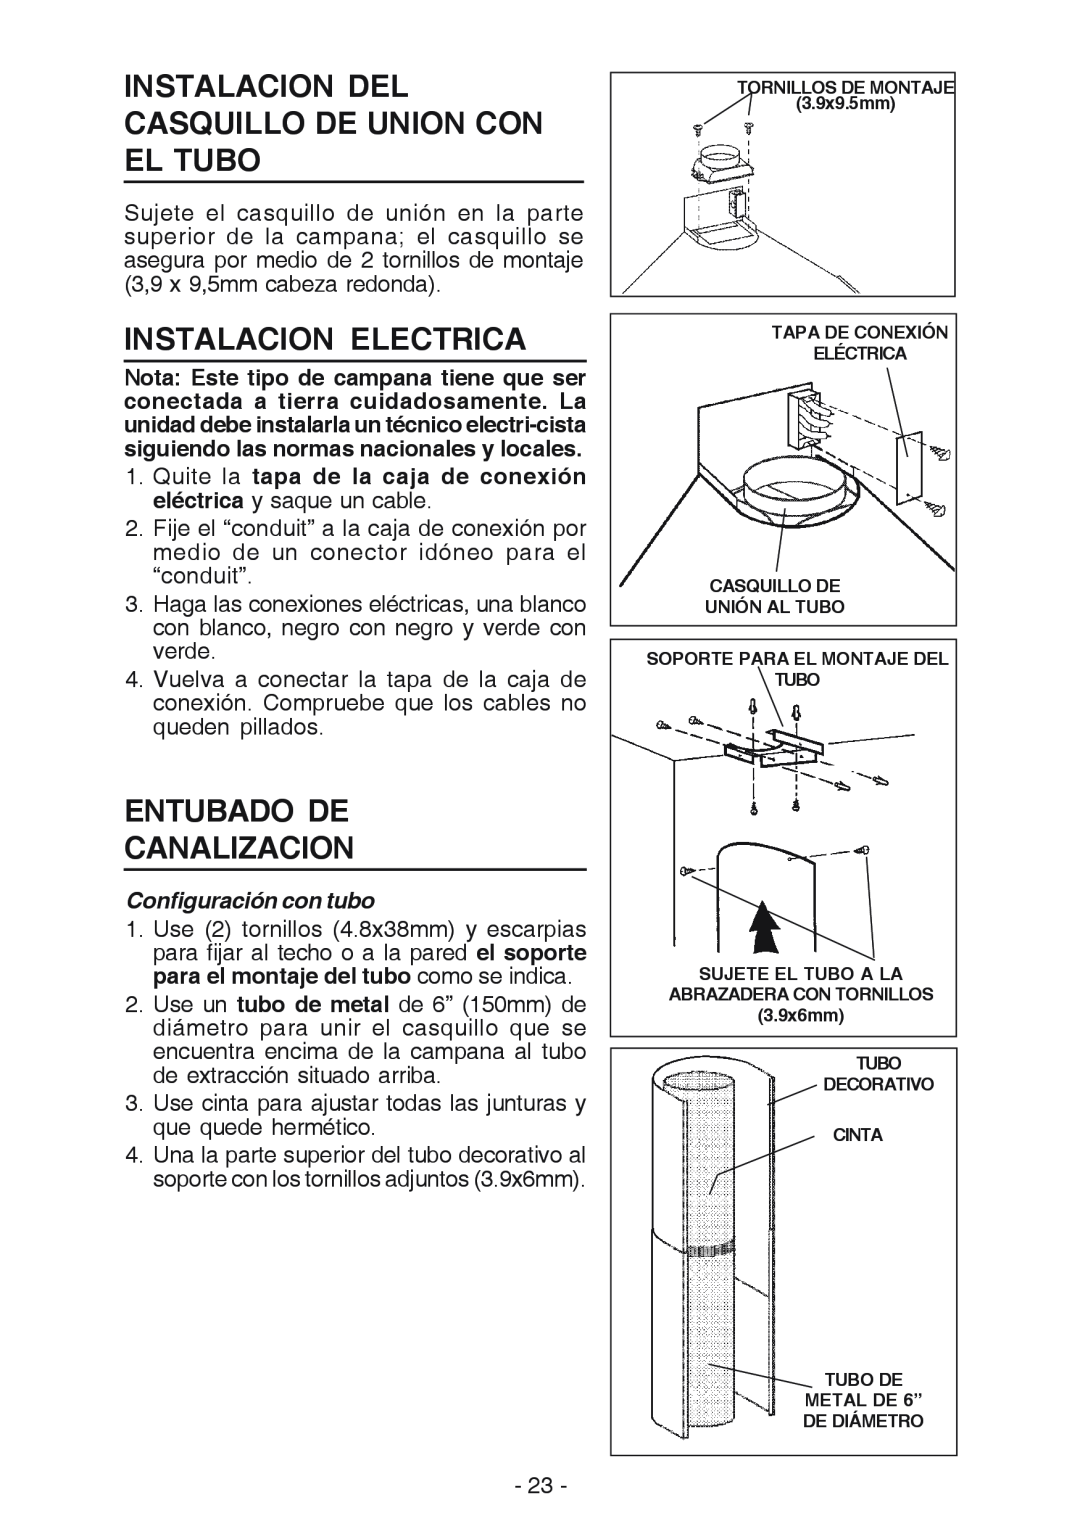 Best K15 manual Instalacion Del Casquillo De Union Con El Tubo, Instalacion Electrica, Entubado De Canalizacion 